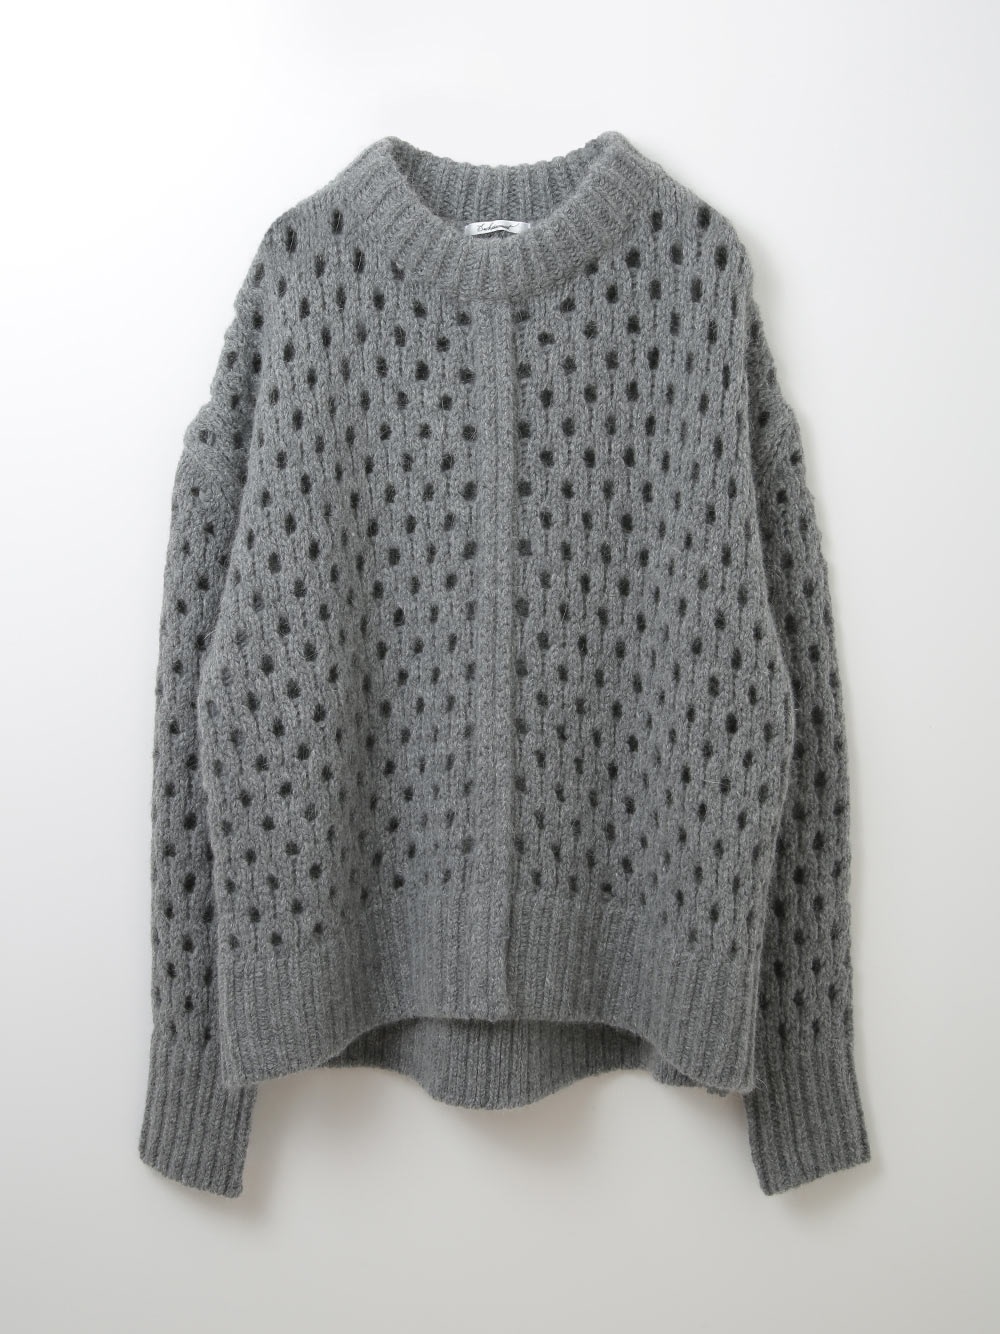 Wool Mesh Knit Pullover(10チャコールグレー-フリー)